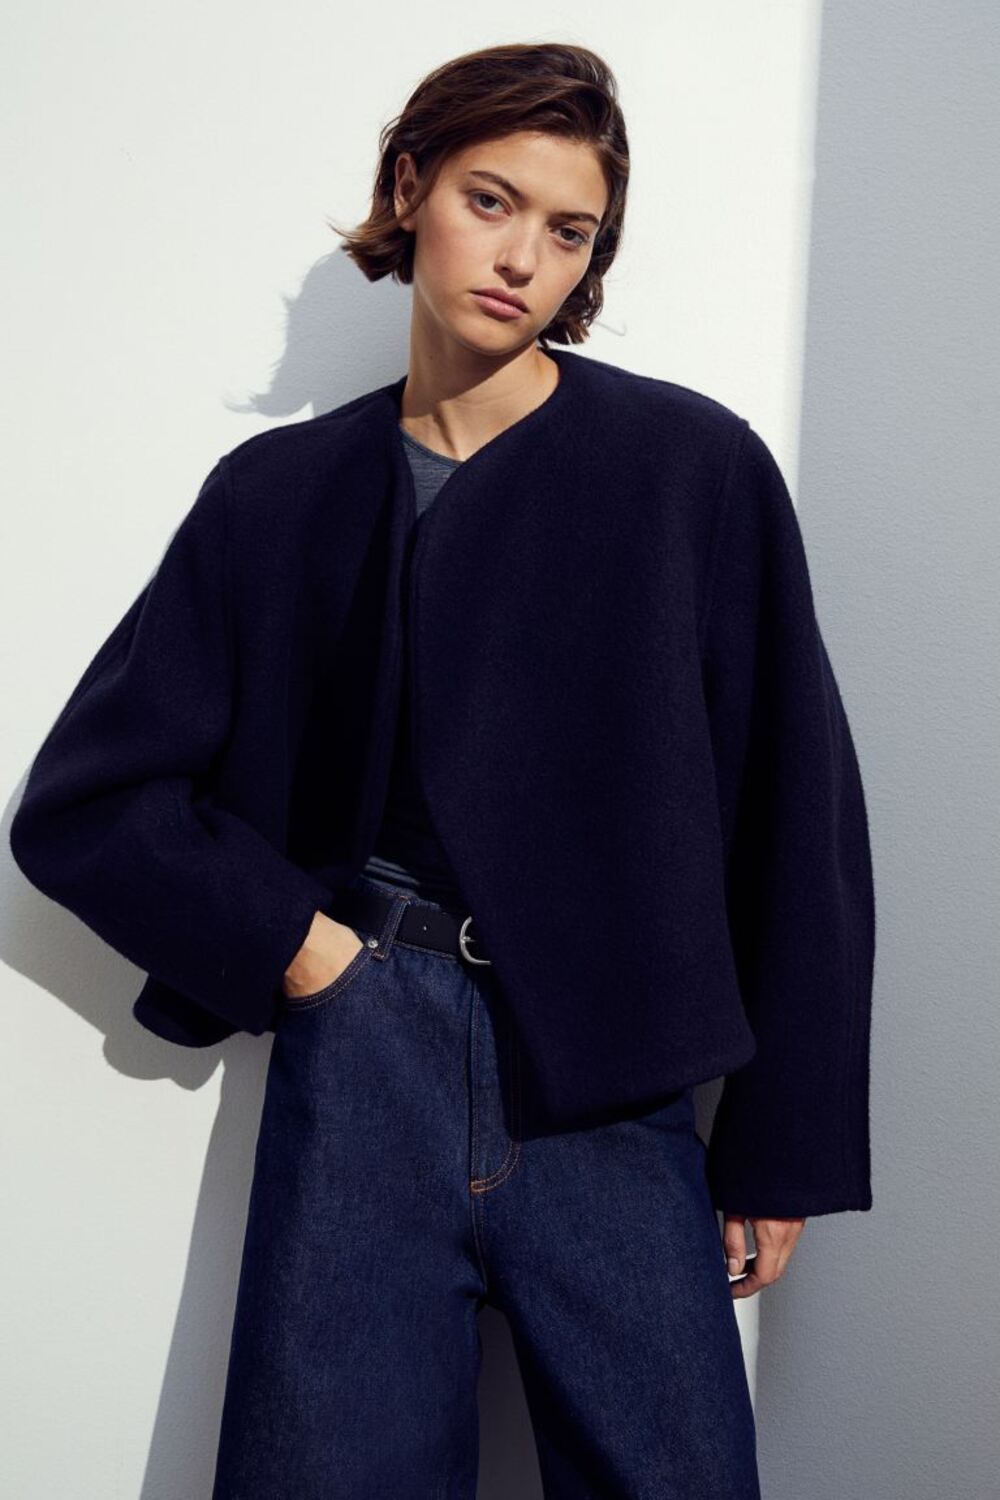 k9 1 Blanket kaputi su ušuškana elegancija i viralni TikTok trend   evo gde možete da ih nađete